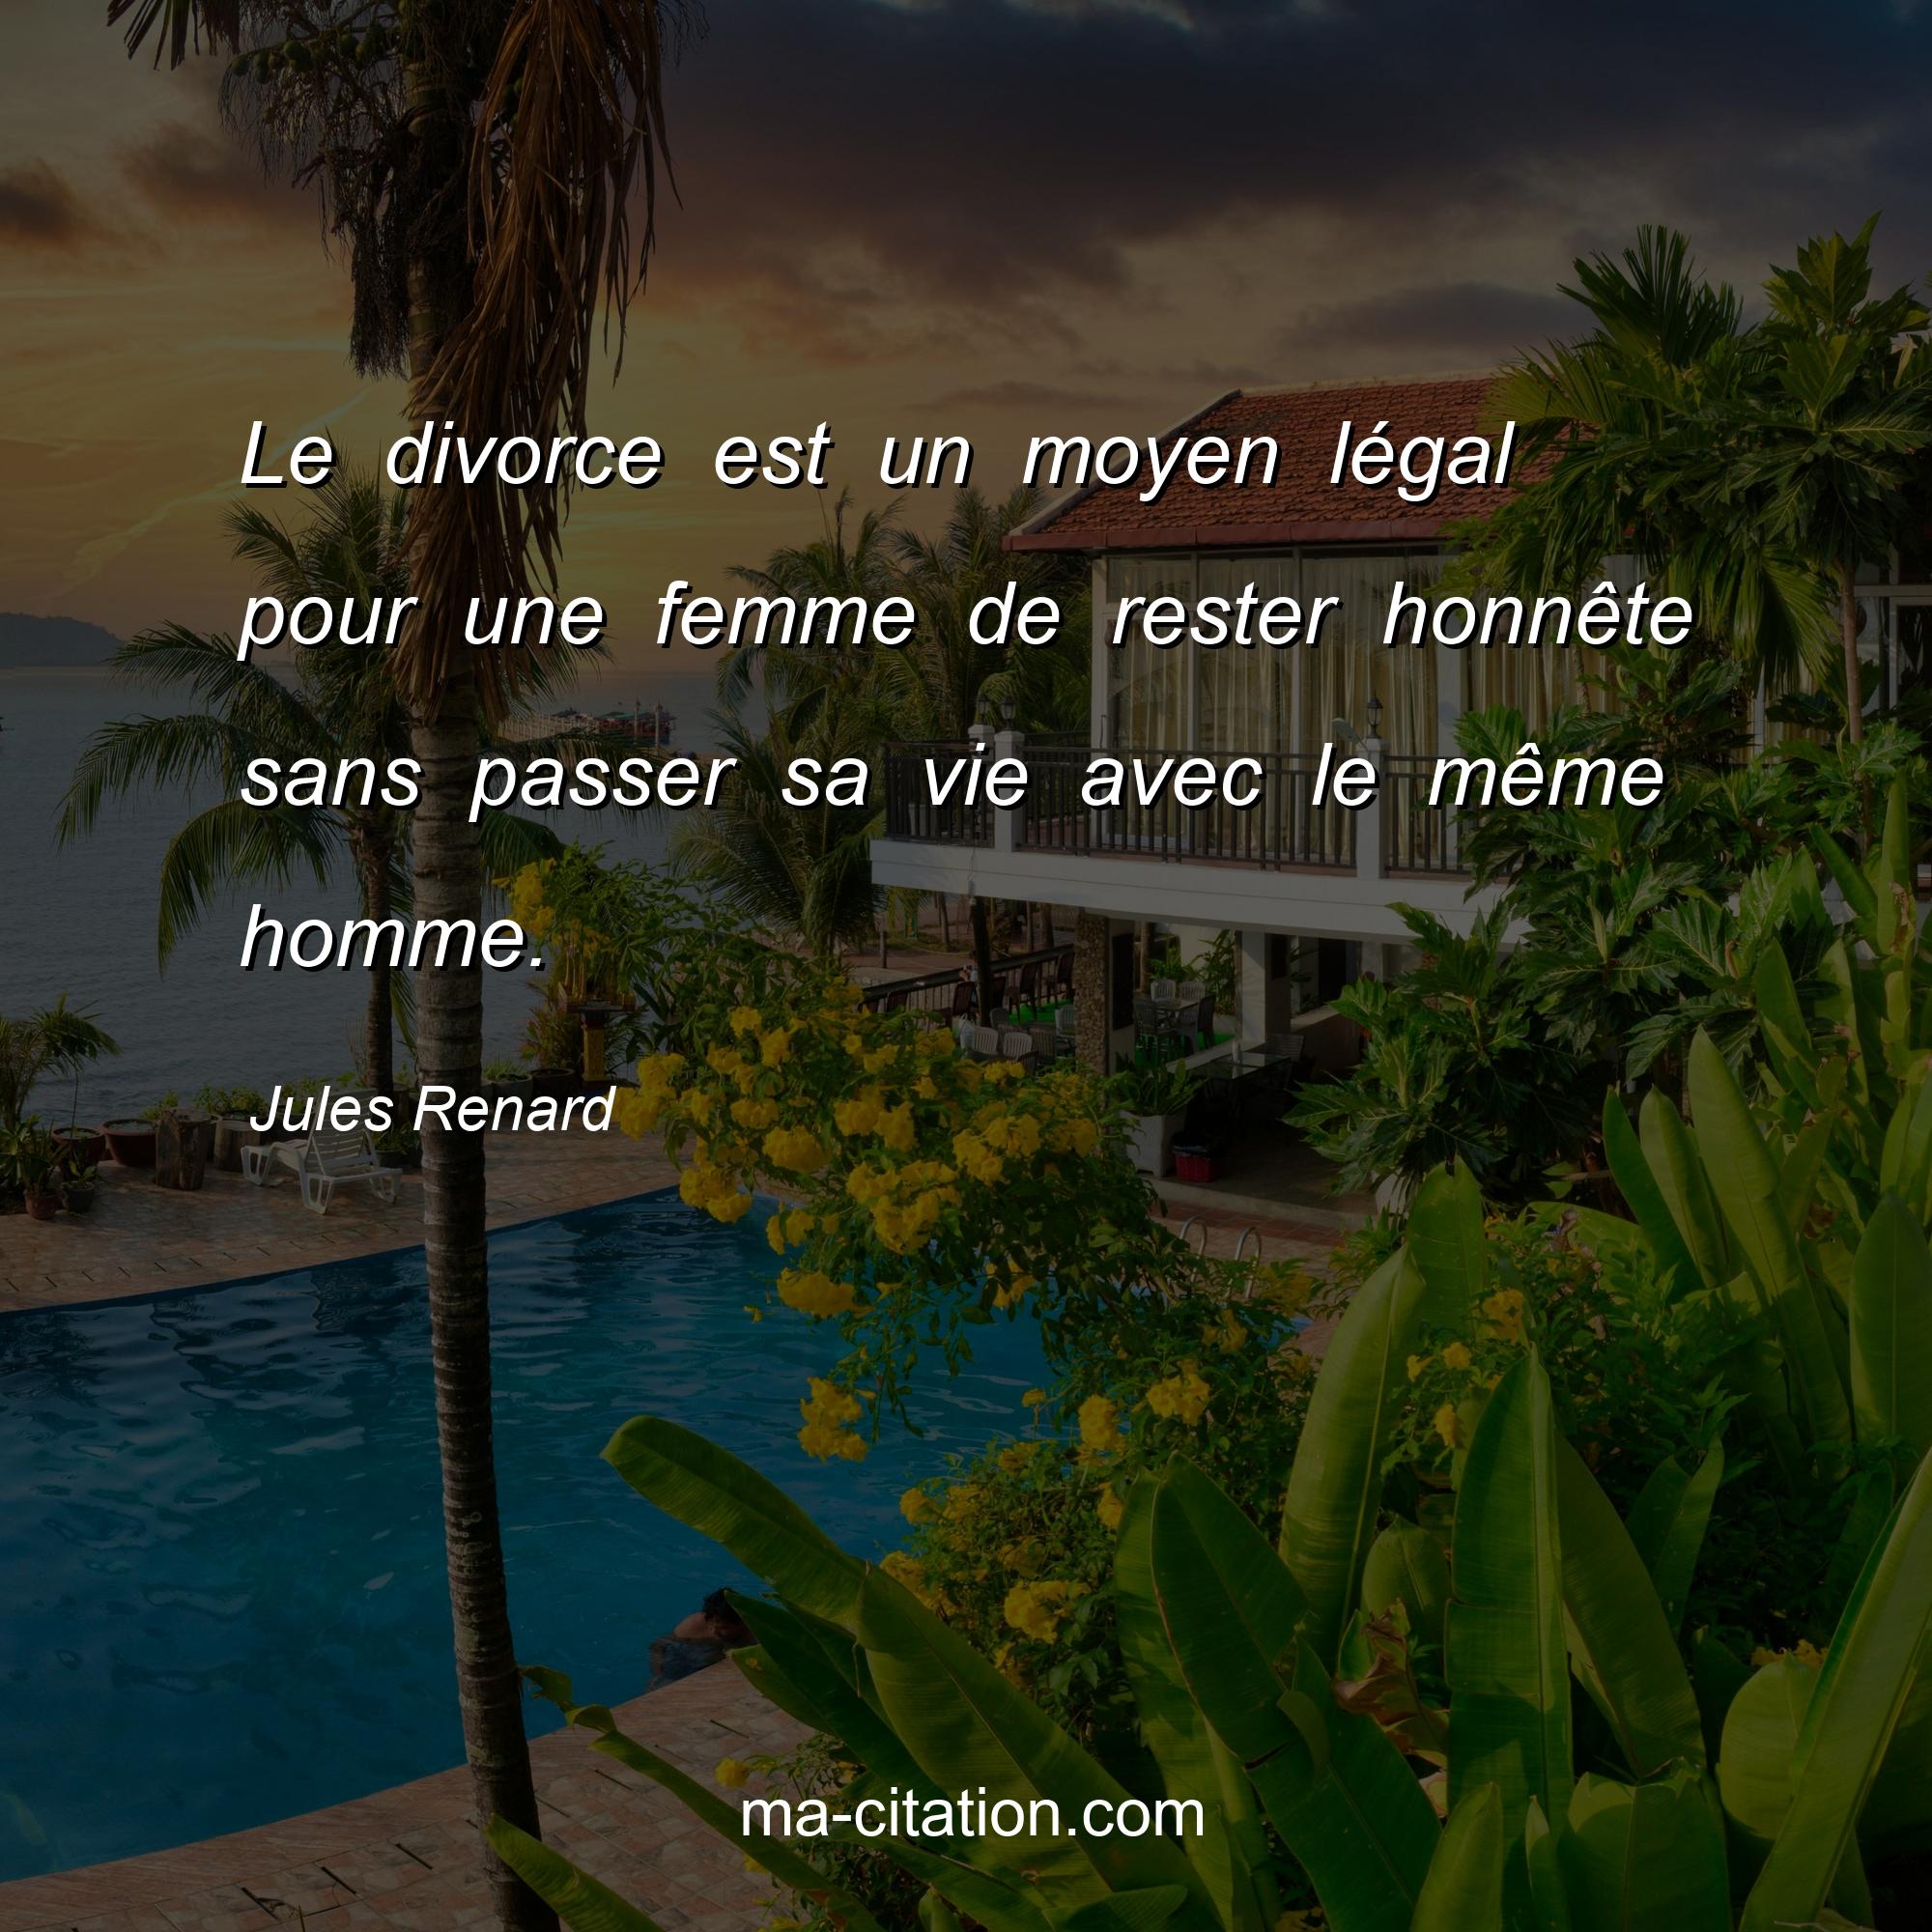 Jules Renard : Le divorce est un moyen légal pour une femme de rester honnête sans passer sa vie avec le même homme.